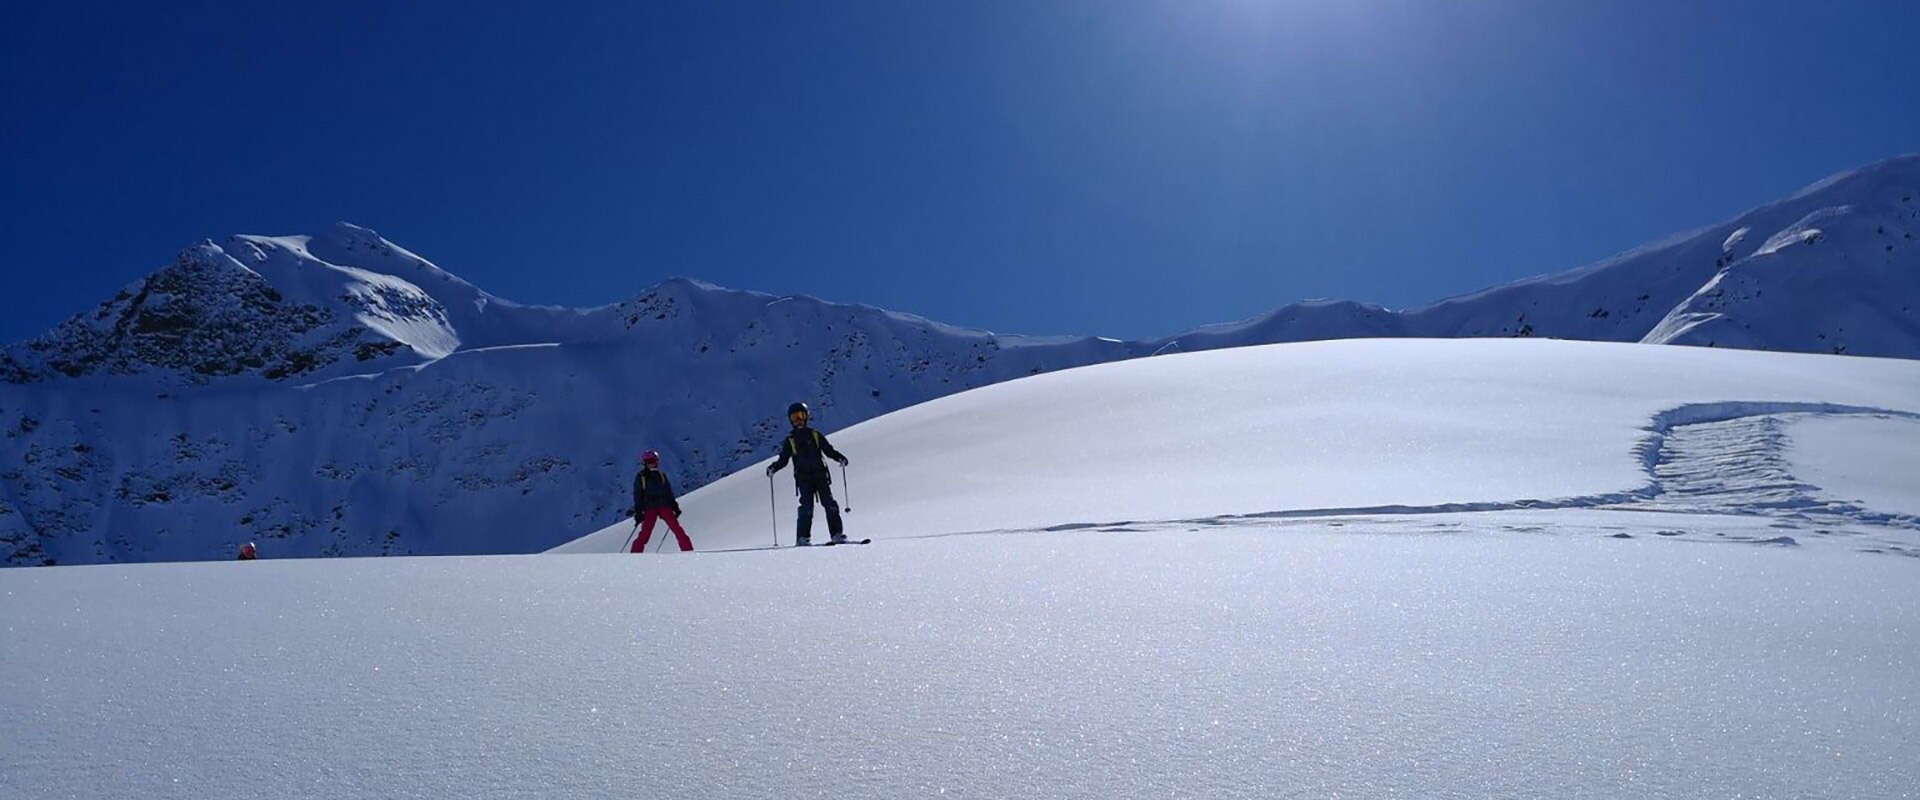 Private Skiunterricht mit der Skischule Pettneu am Arlberg